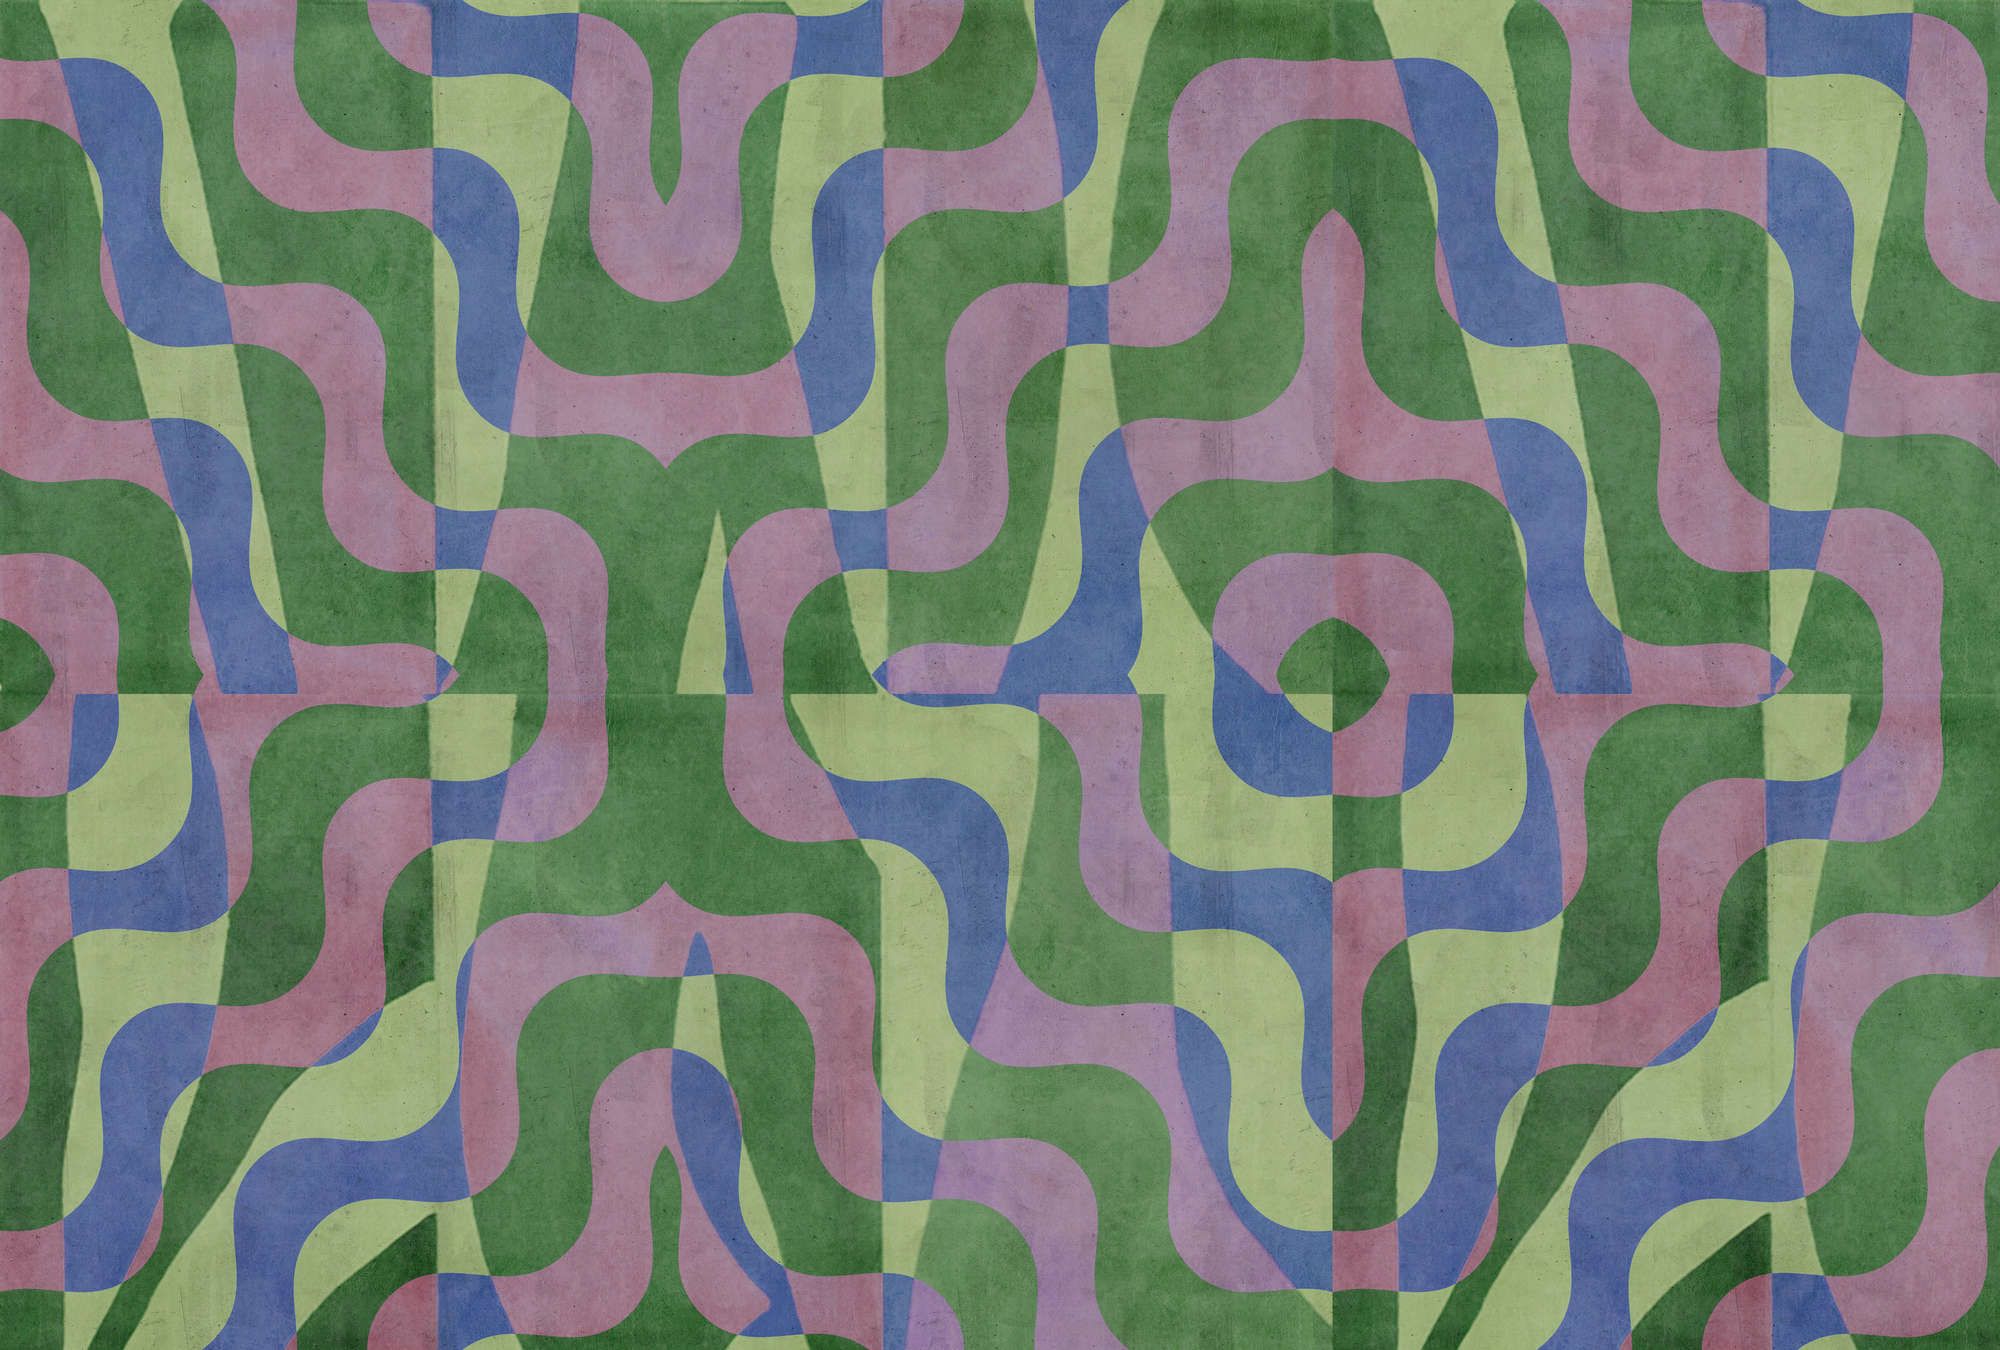             Digital behang »viola« - Abstract retro patroon voor betonpleister look - Groen, blauw, paars | Licht structuurvlies
        